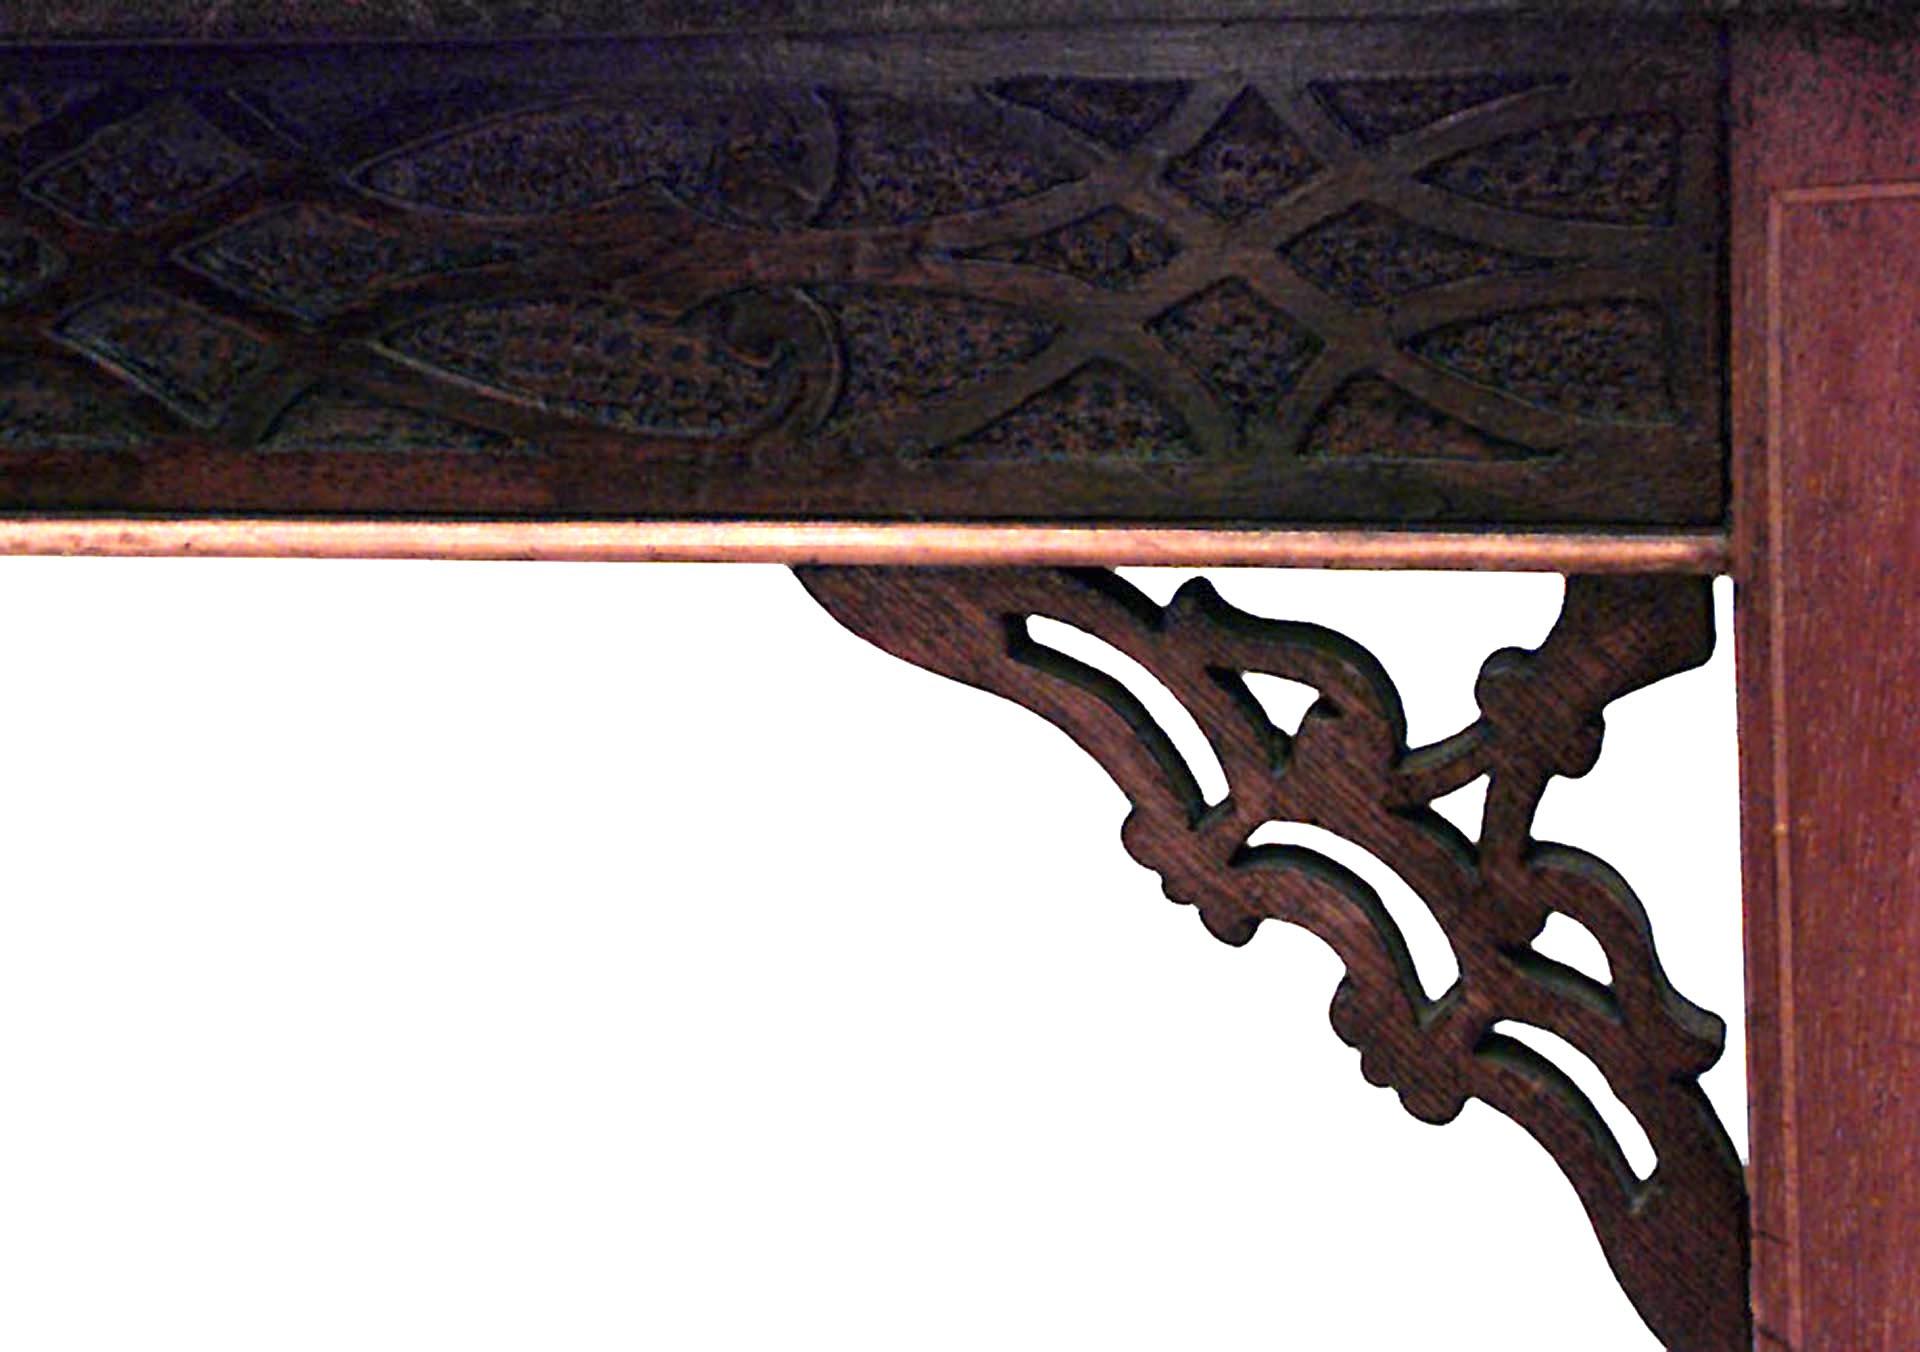 Table d'appoint en acajou incrusté de lignes, de style chinois Chippendale (fin XIXe siècle), avec un tablier chantourné aveugle et une traverse en X supportant un étage inférieur.
